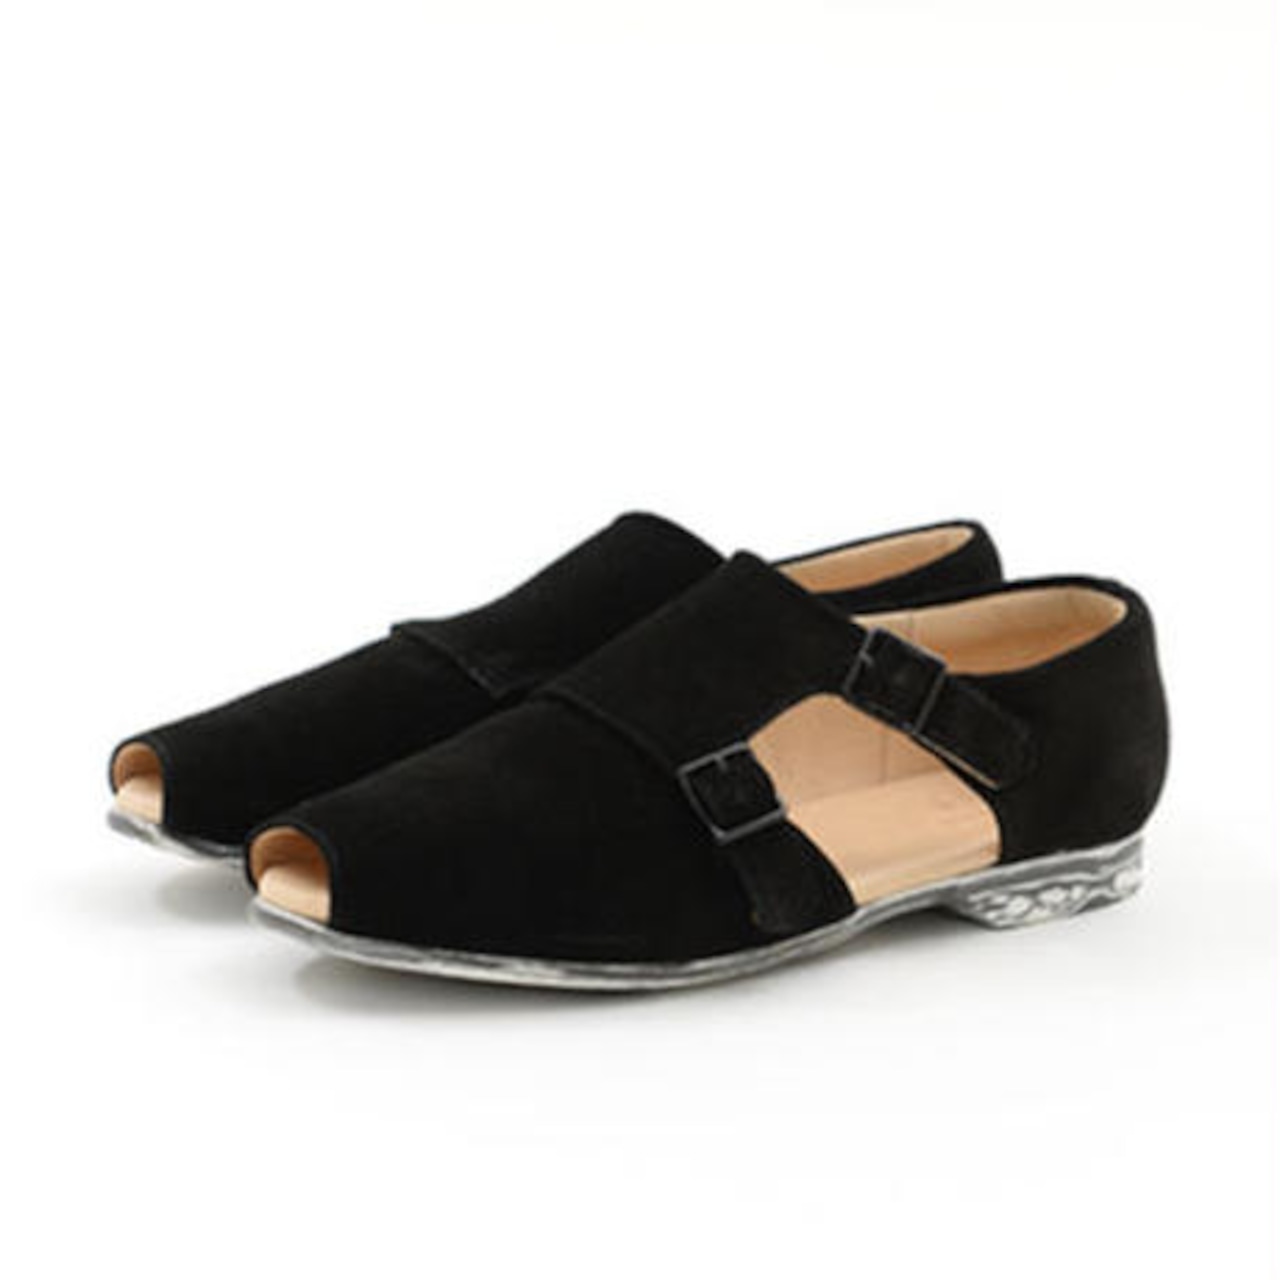 【 UNIONINI 】double monk strap shoes   black   22.5-24cm